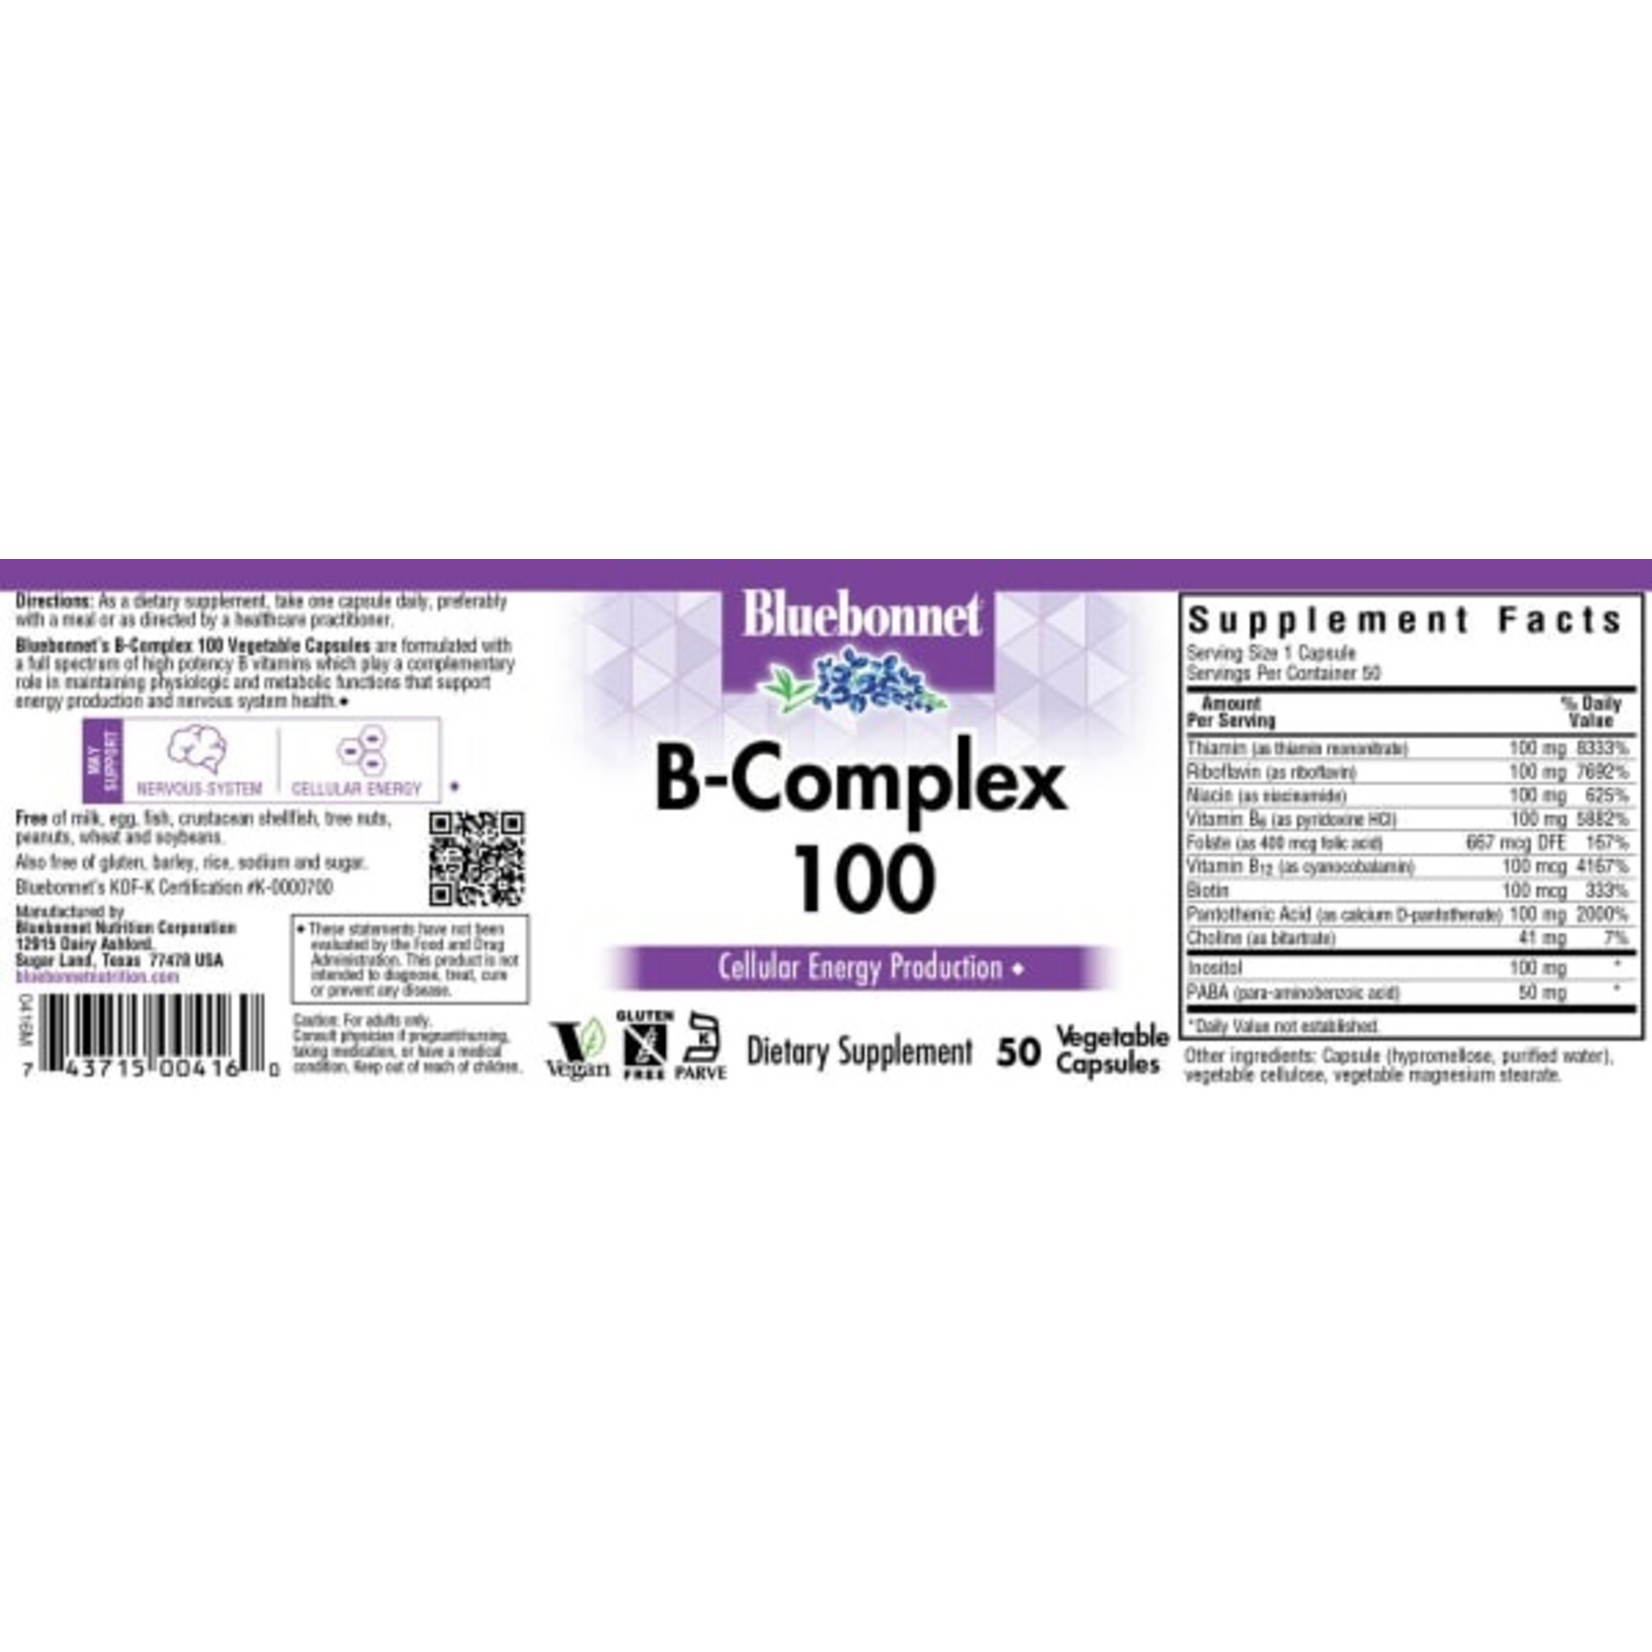 Bluebonnet Bluebonnet - B-Complex 100 - 50 Veg Capsules